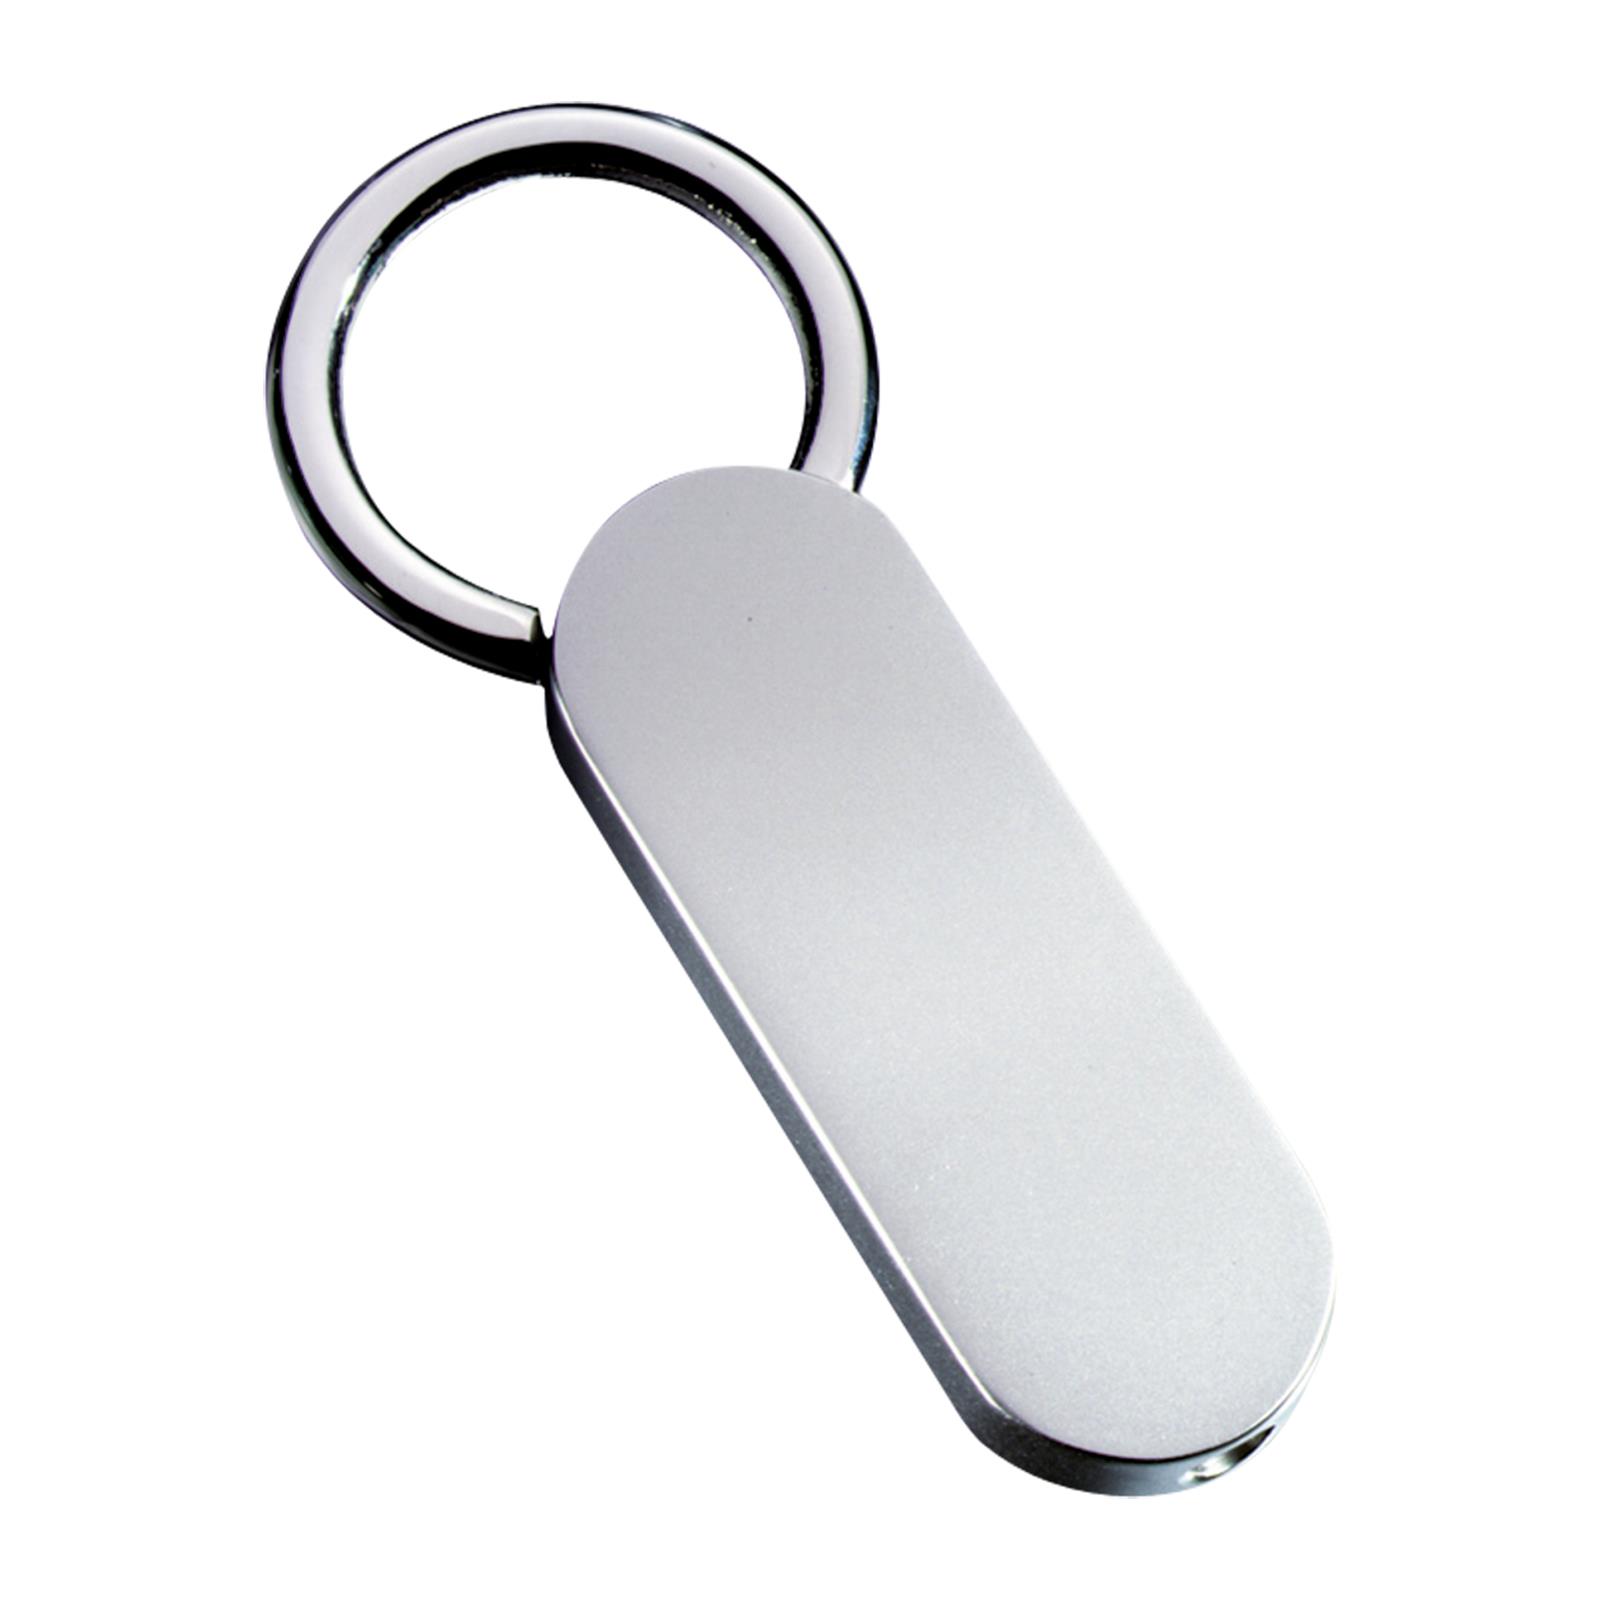 Schlüsselanhänger RE98-CLASSIC SMALL